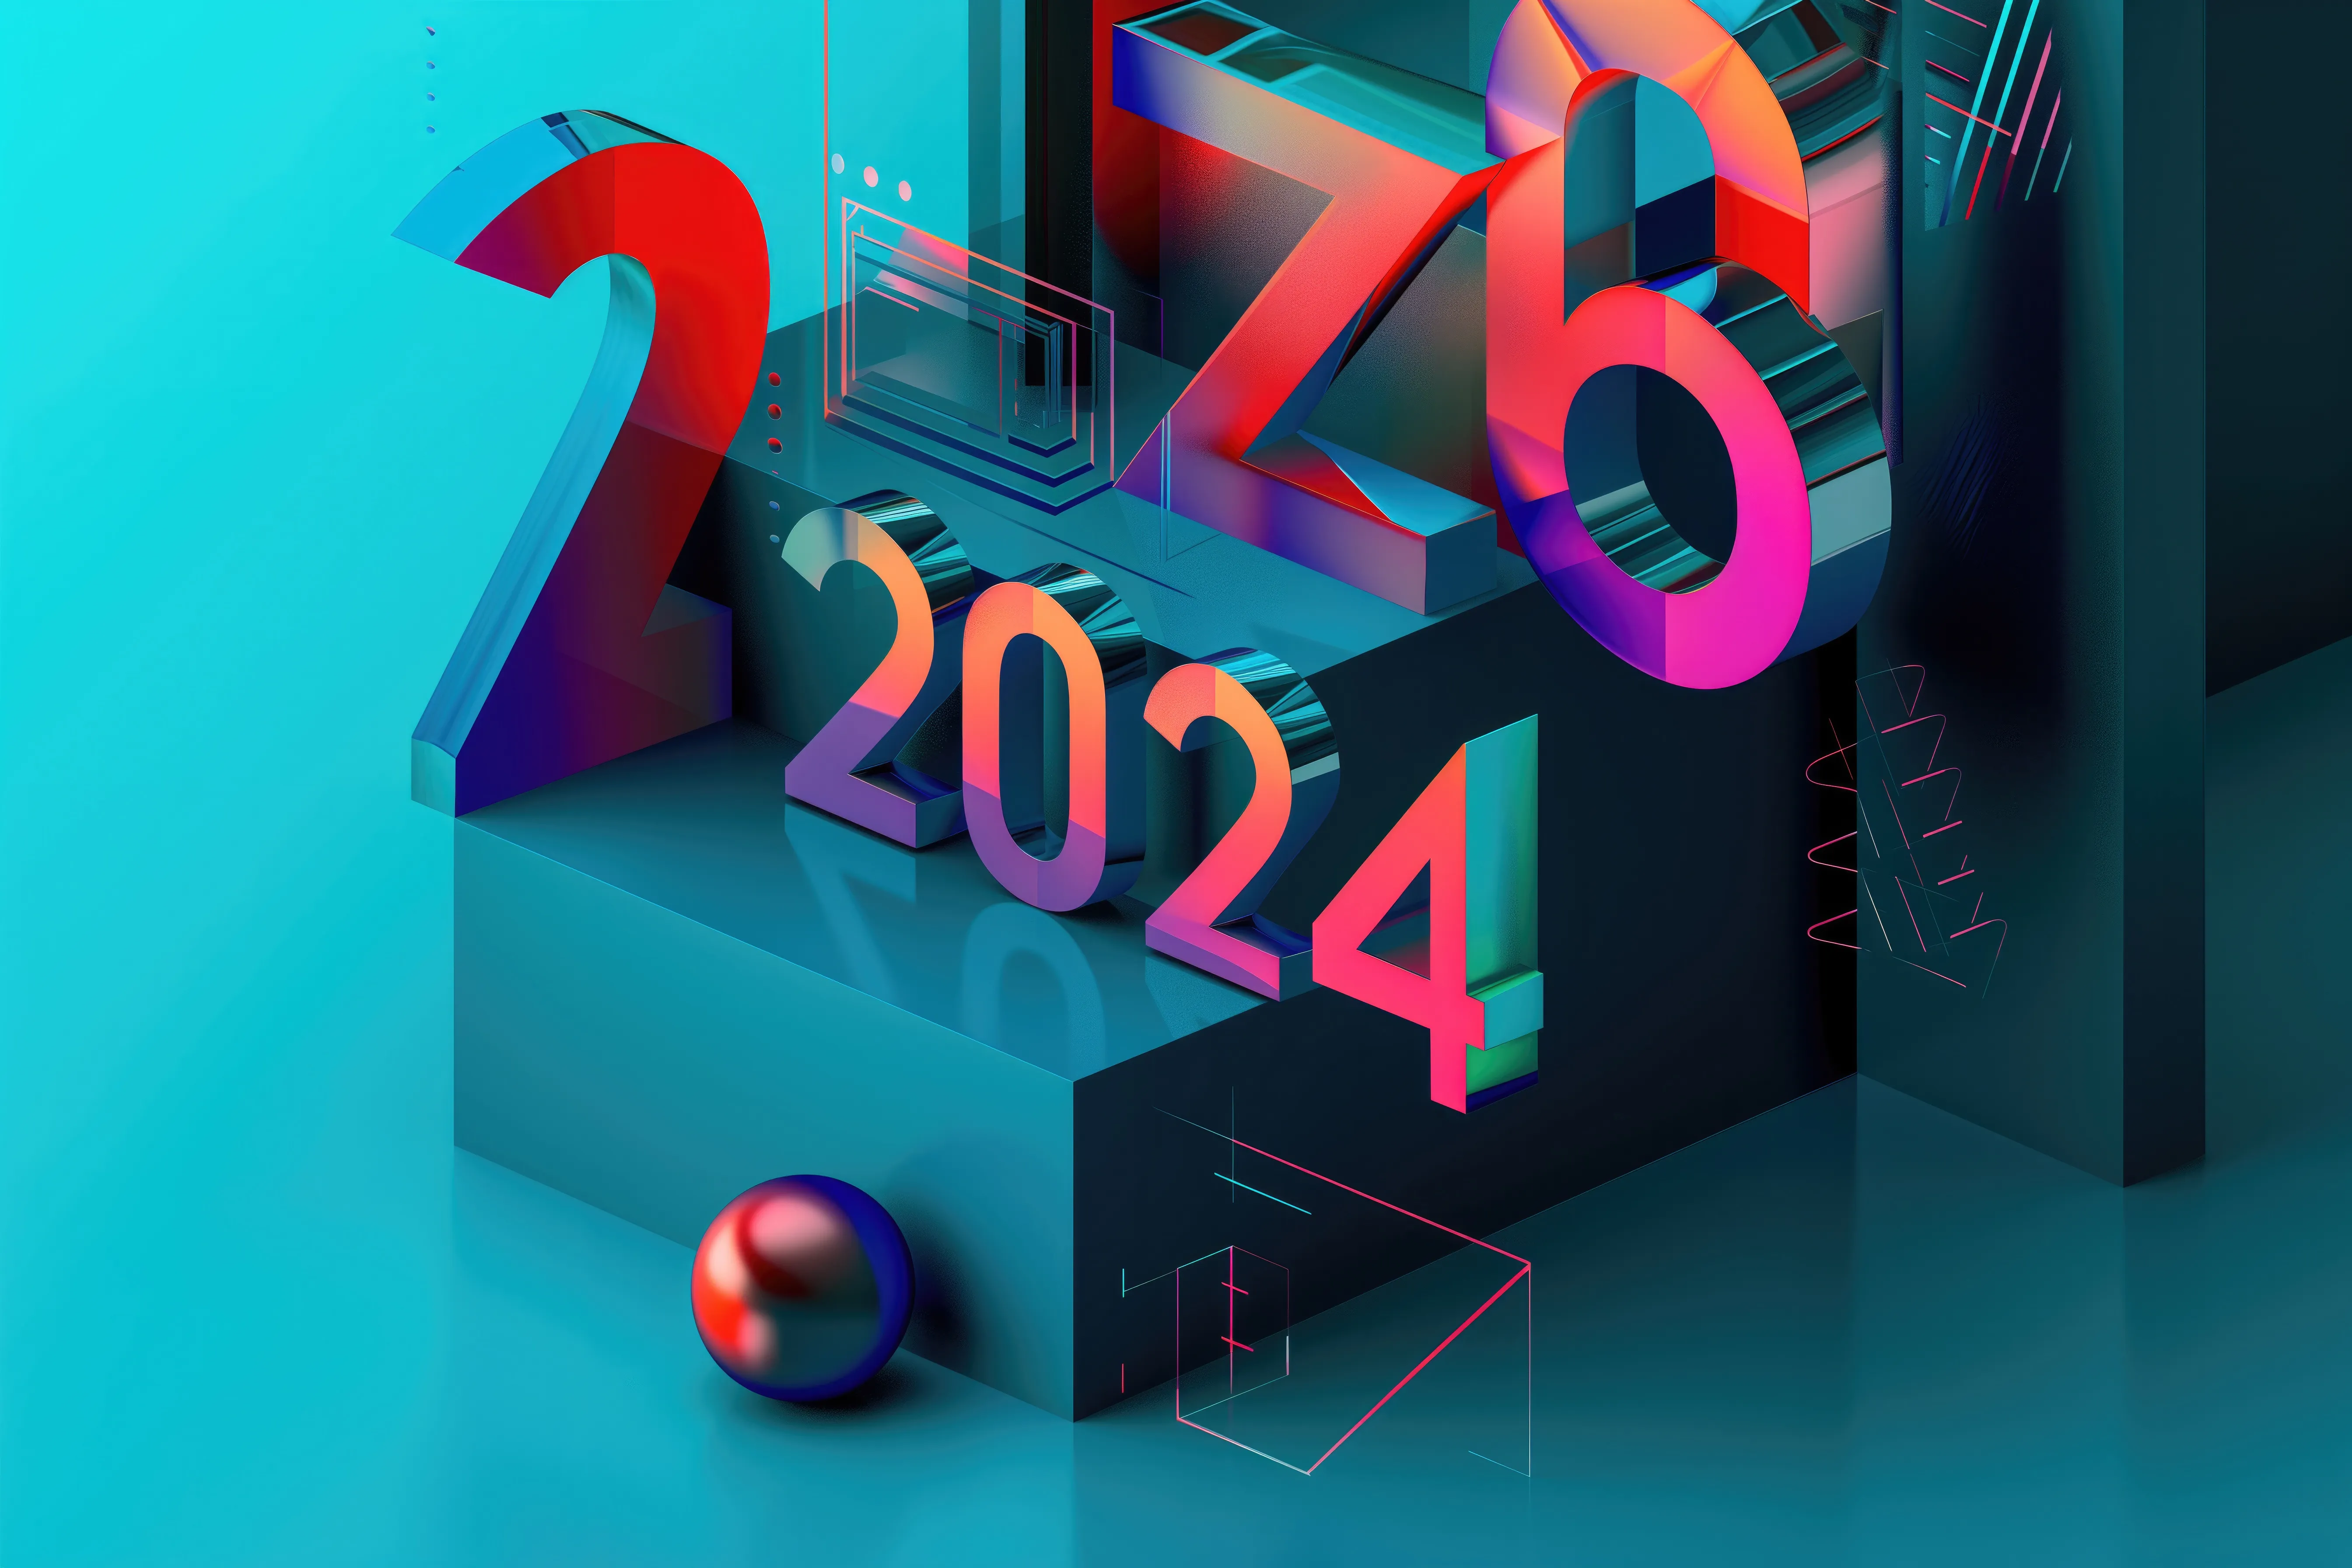 imagem com ano 2024 com colorida e com vários blocos